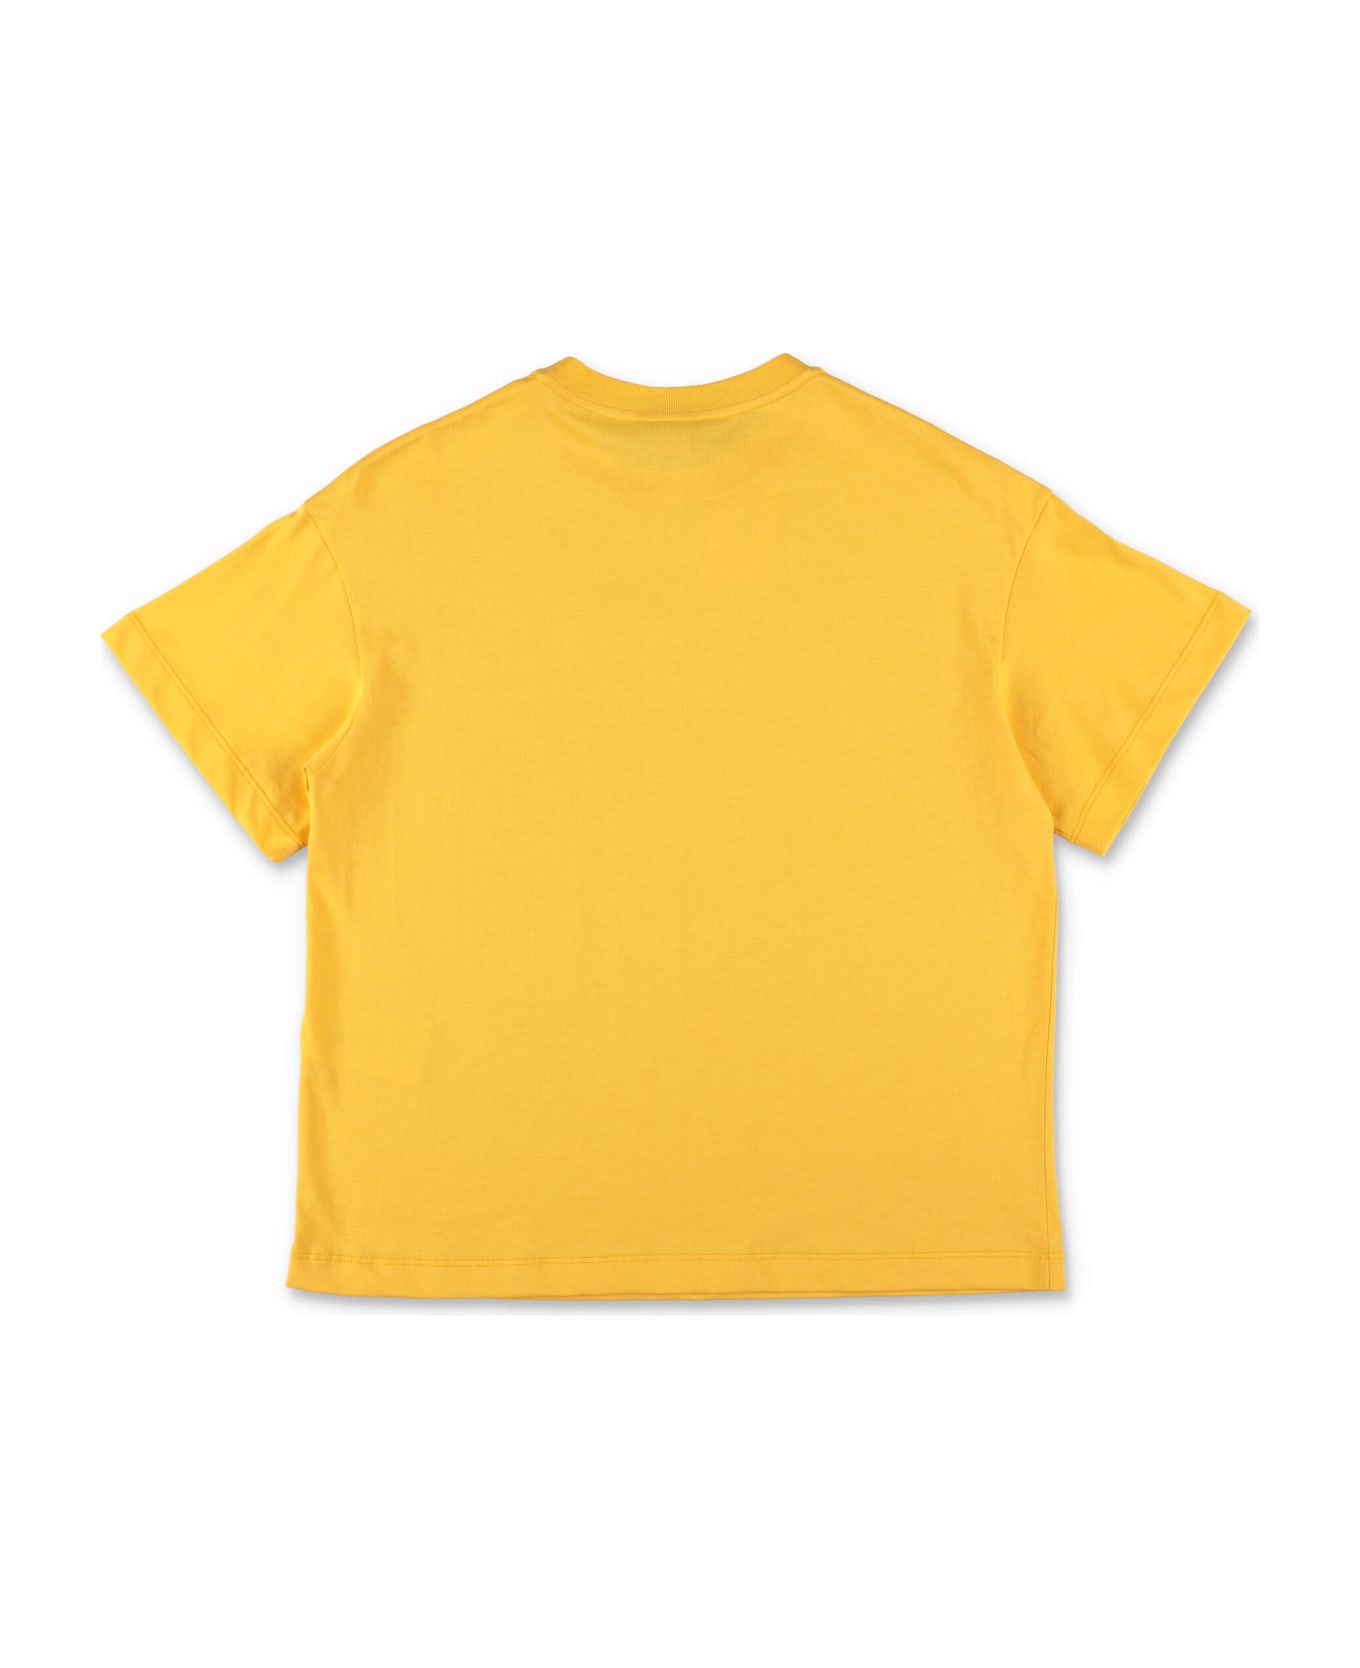 Fendi T-shirt Gialla In Jersey Di Cotone Bambino - Giallo Tシャツ＆ポロシャツ